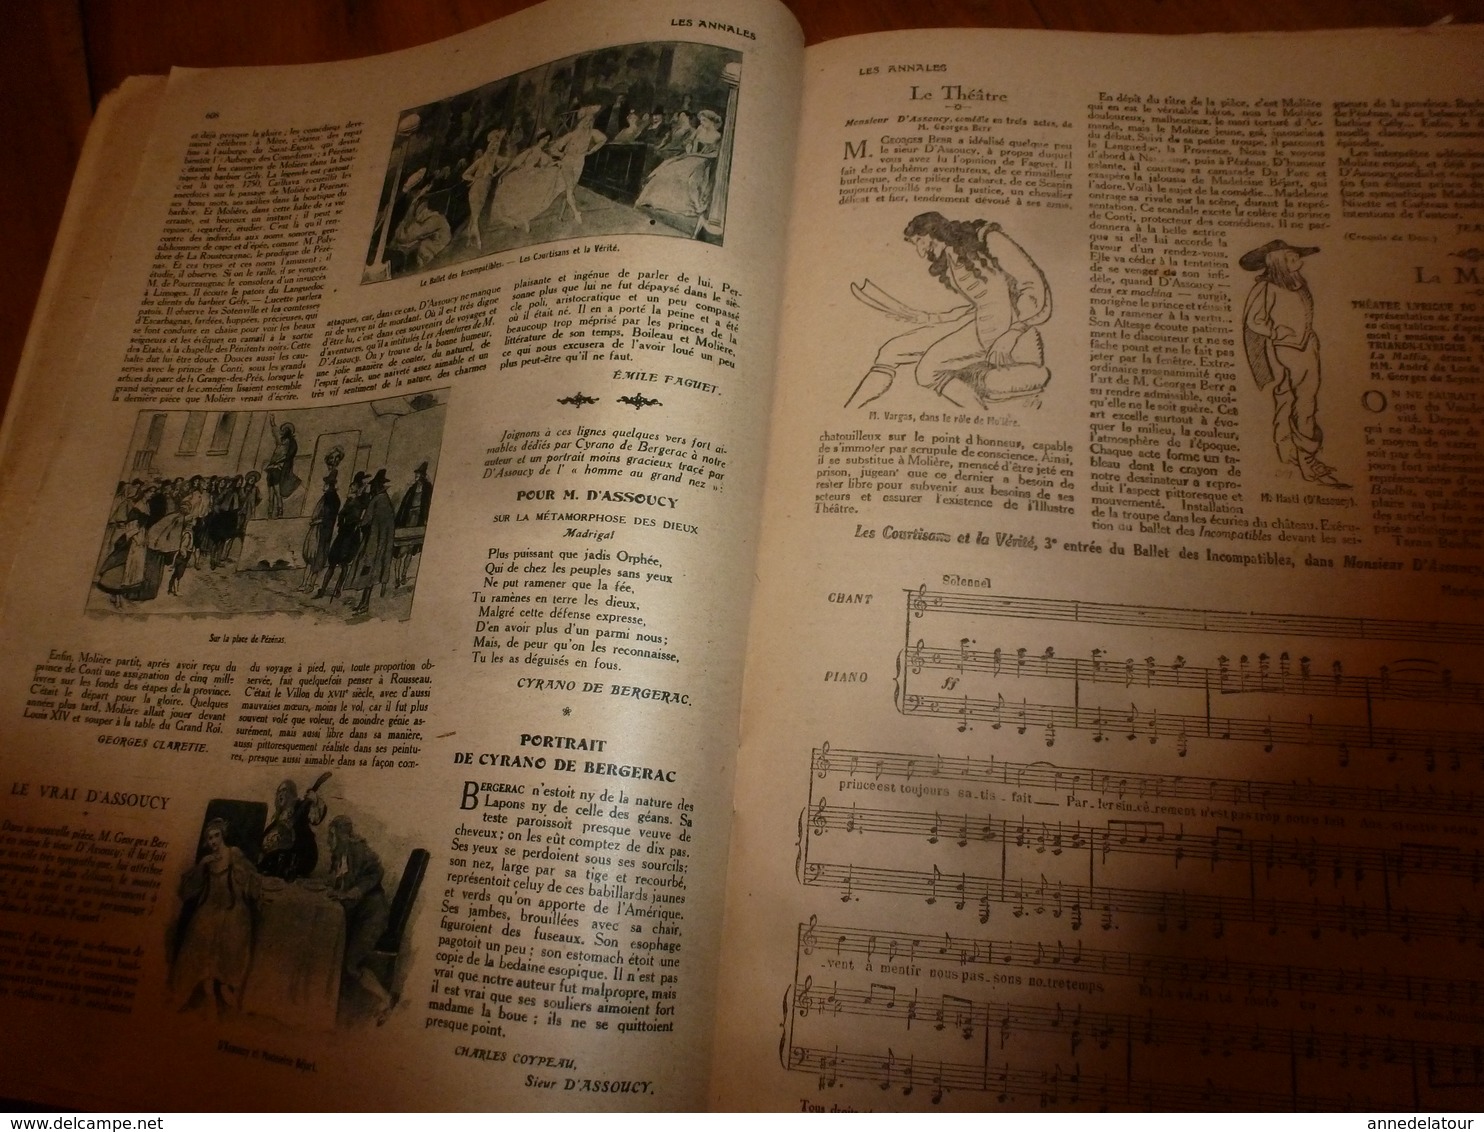 1919  LES ANNALES: Pub L'HIVER en SUISSE; Famille héroîque des GARIBALDI;Chanson NOËL de METZ;L'oeuvre de RENOIR;etc